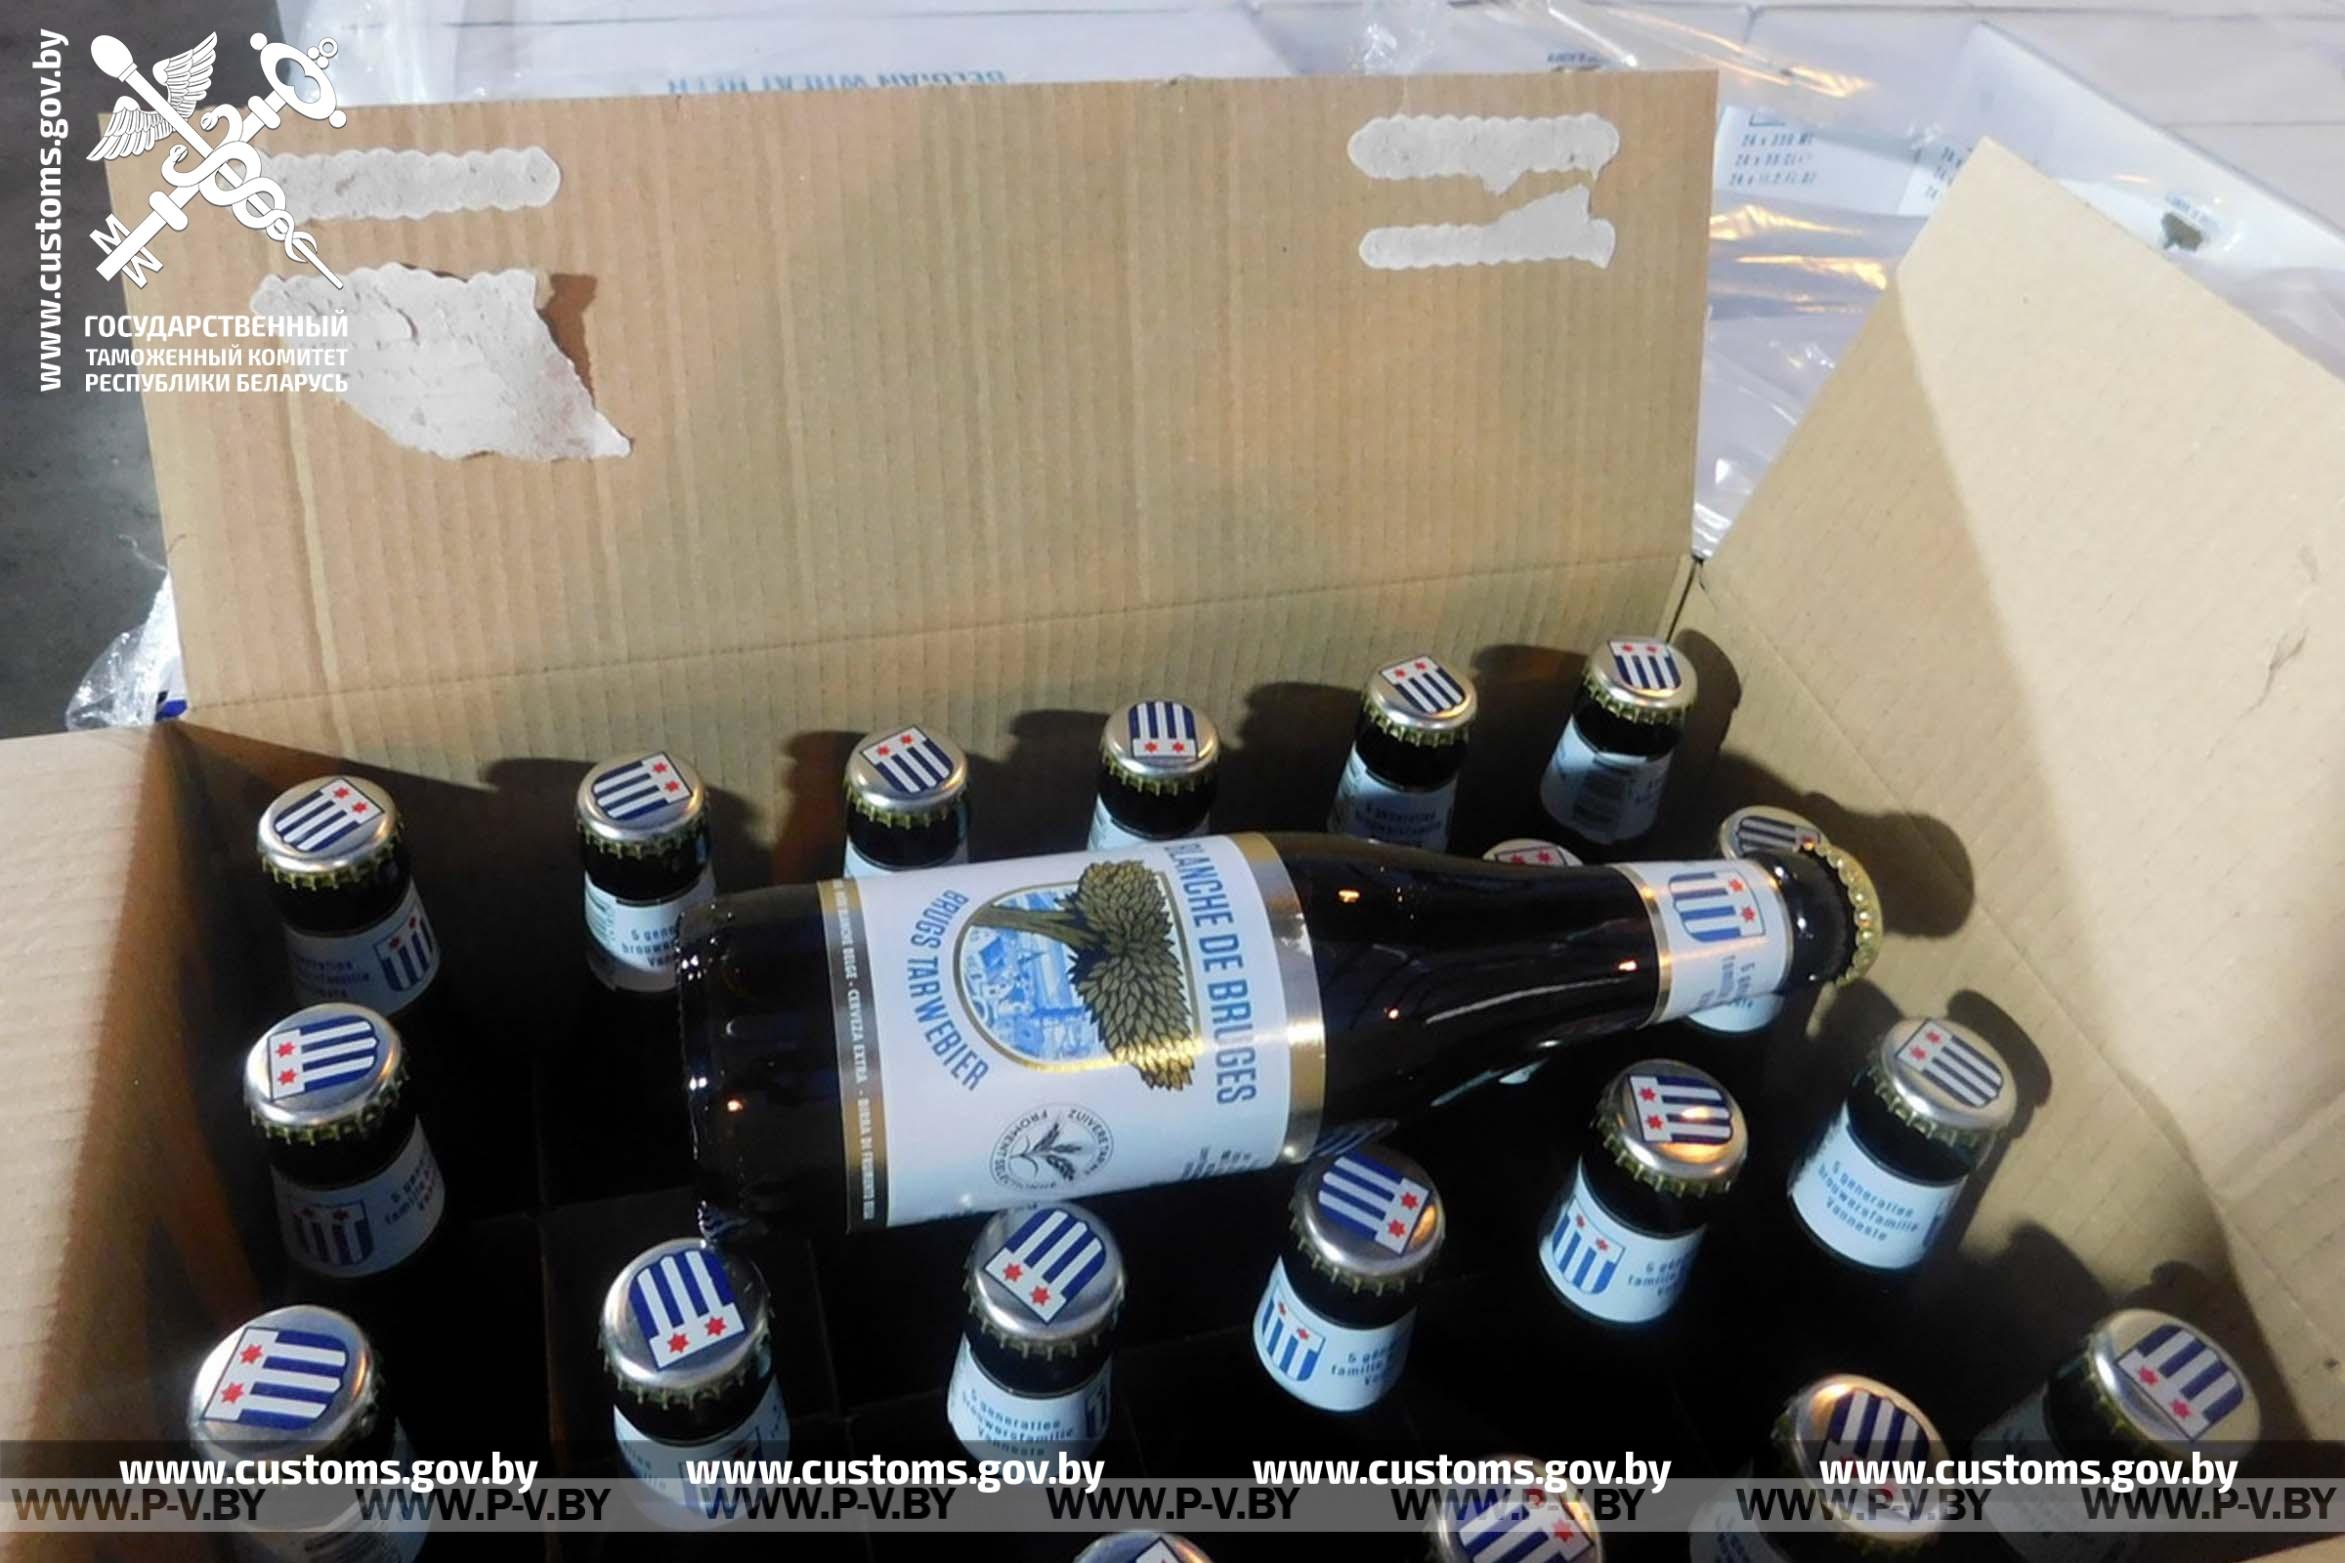 Польский перевозчик незадекларировал 2,3 тысячи литров пива. Нарушение выявили брестские таможенники в пункте пропуска «Козловичи»